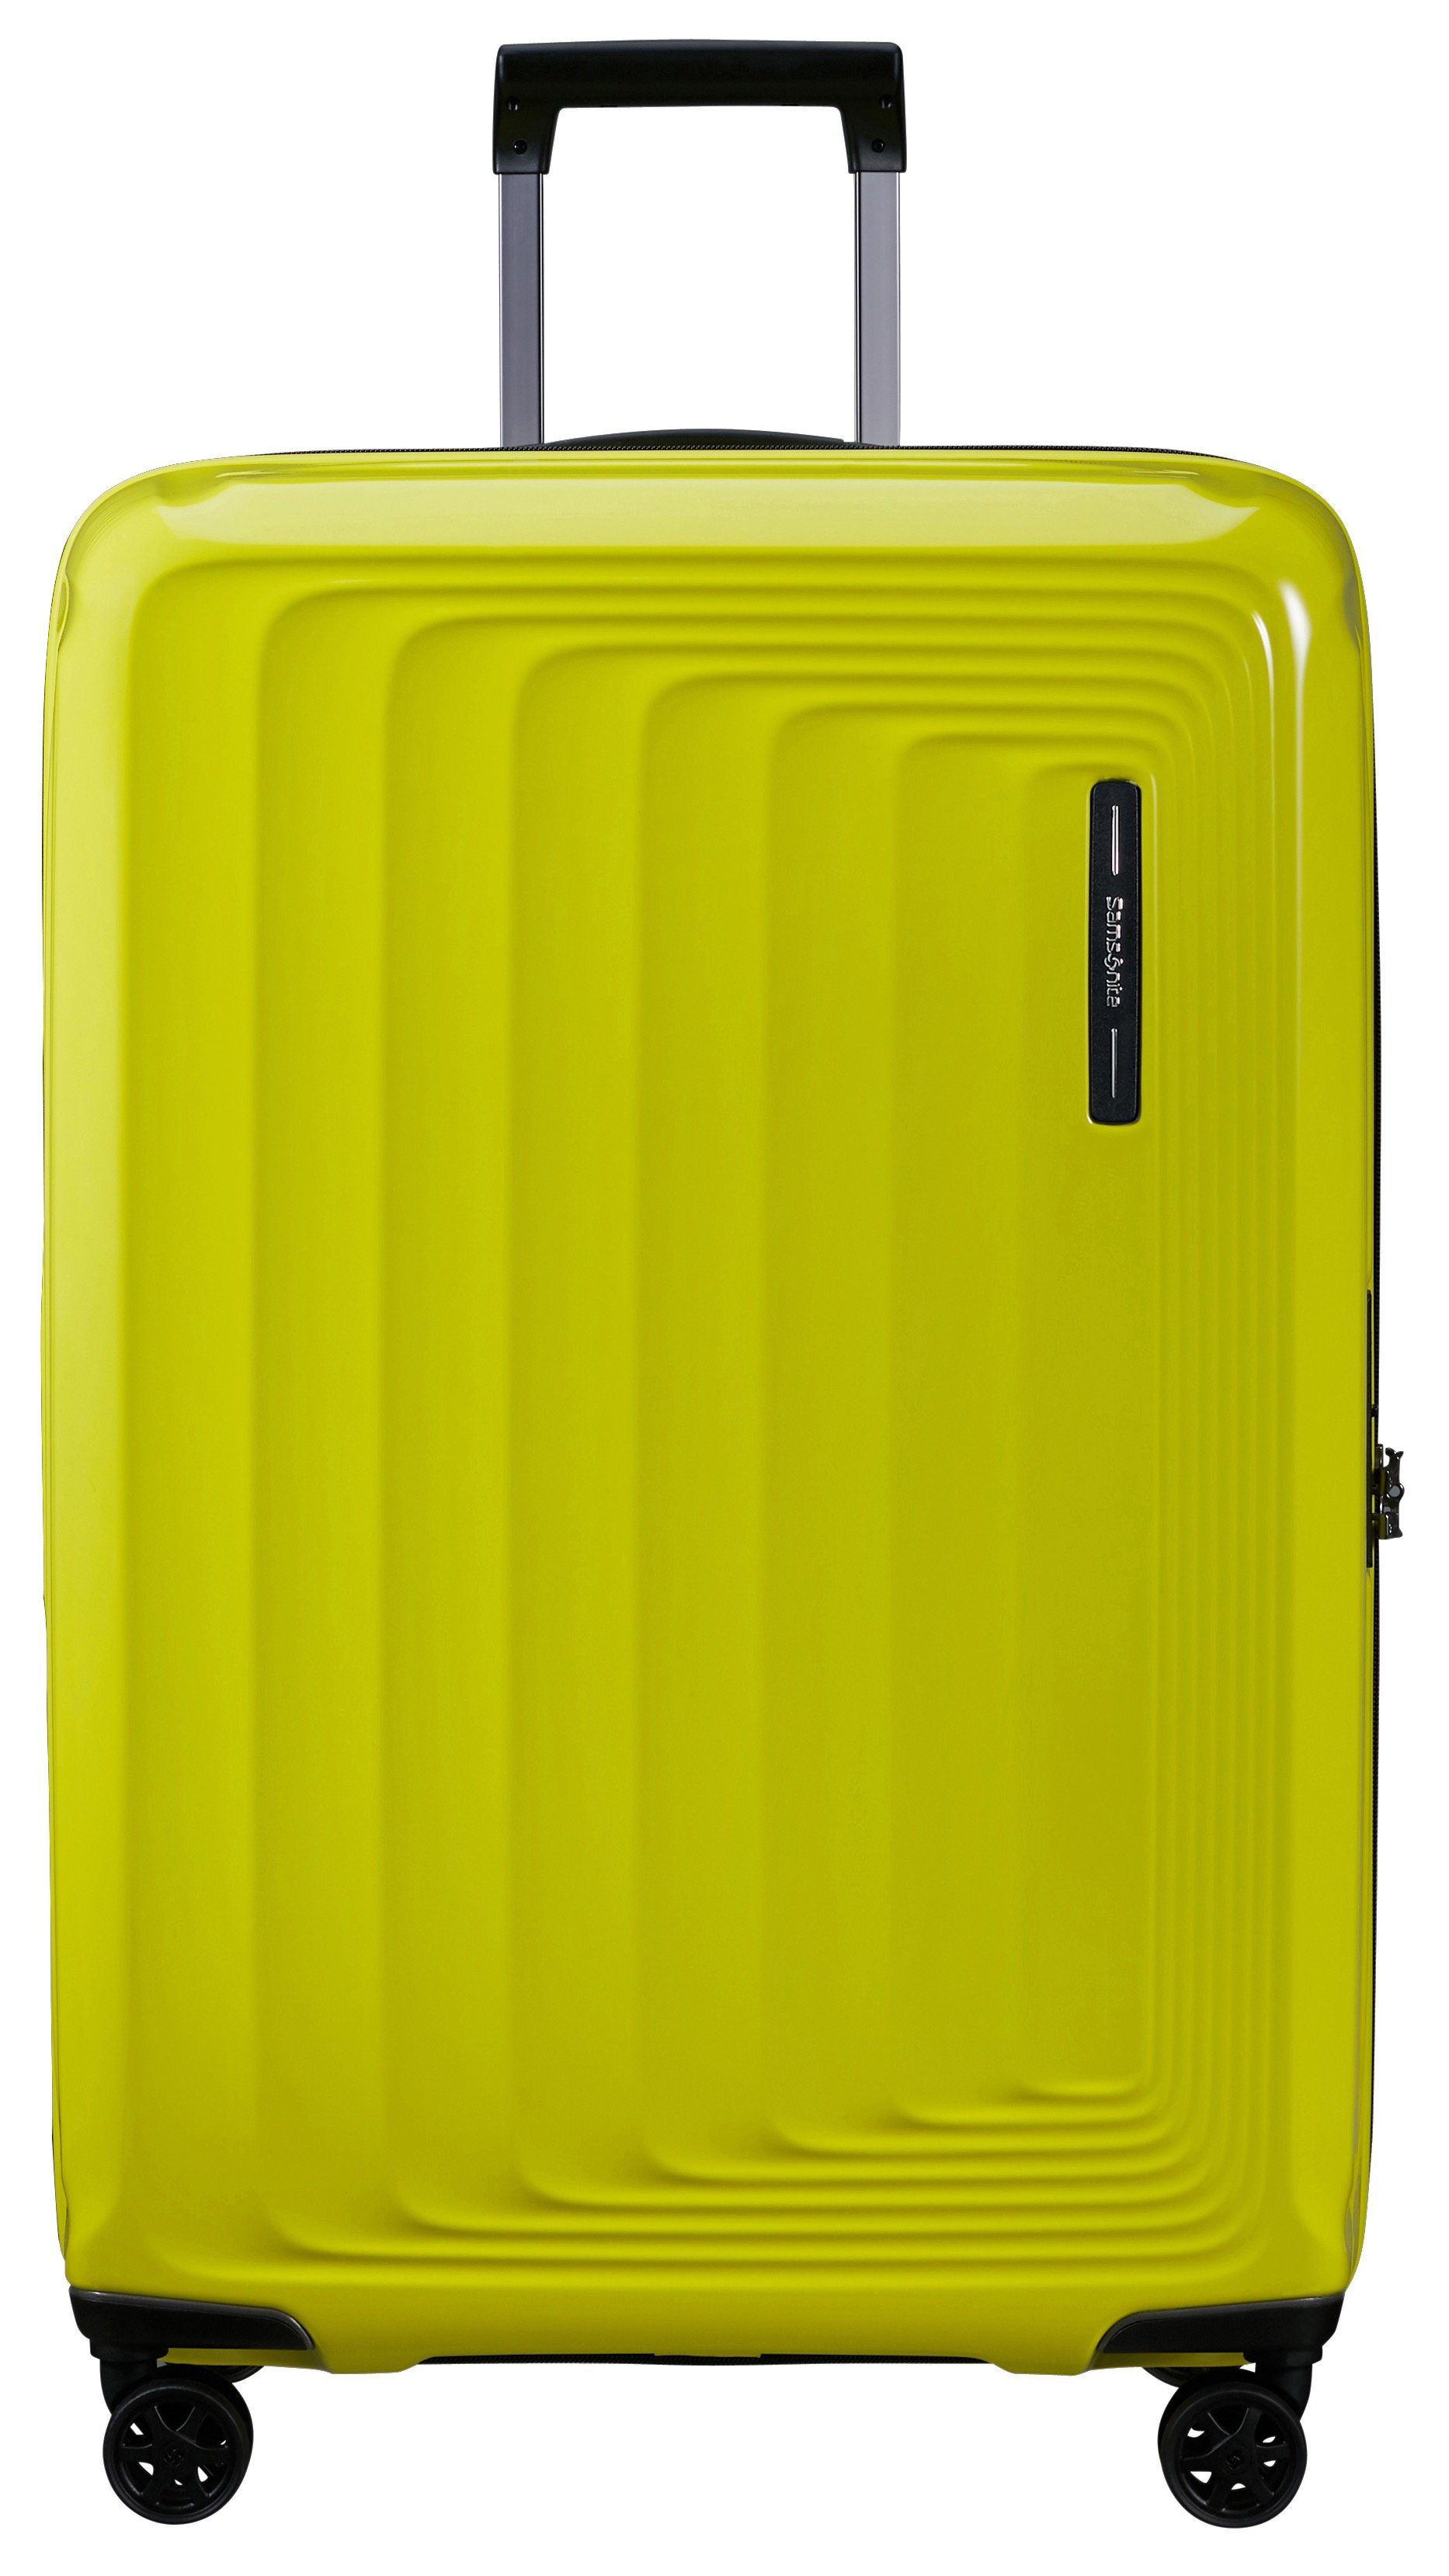 Große Samsonite Koffer online kaufen | OTTO | Koffer